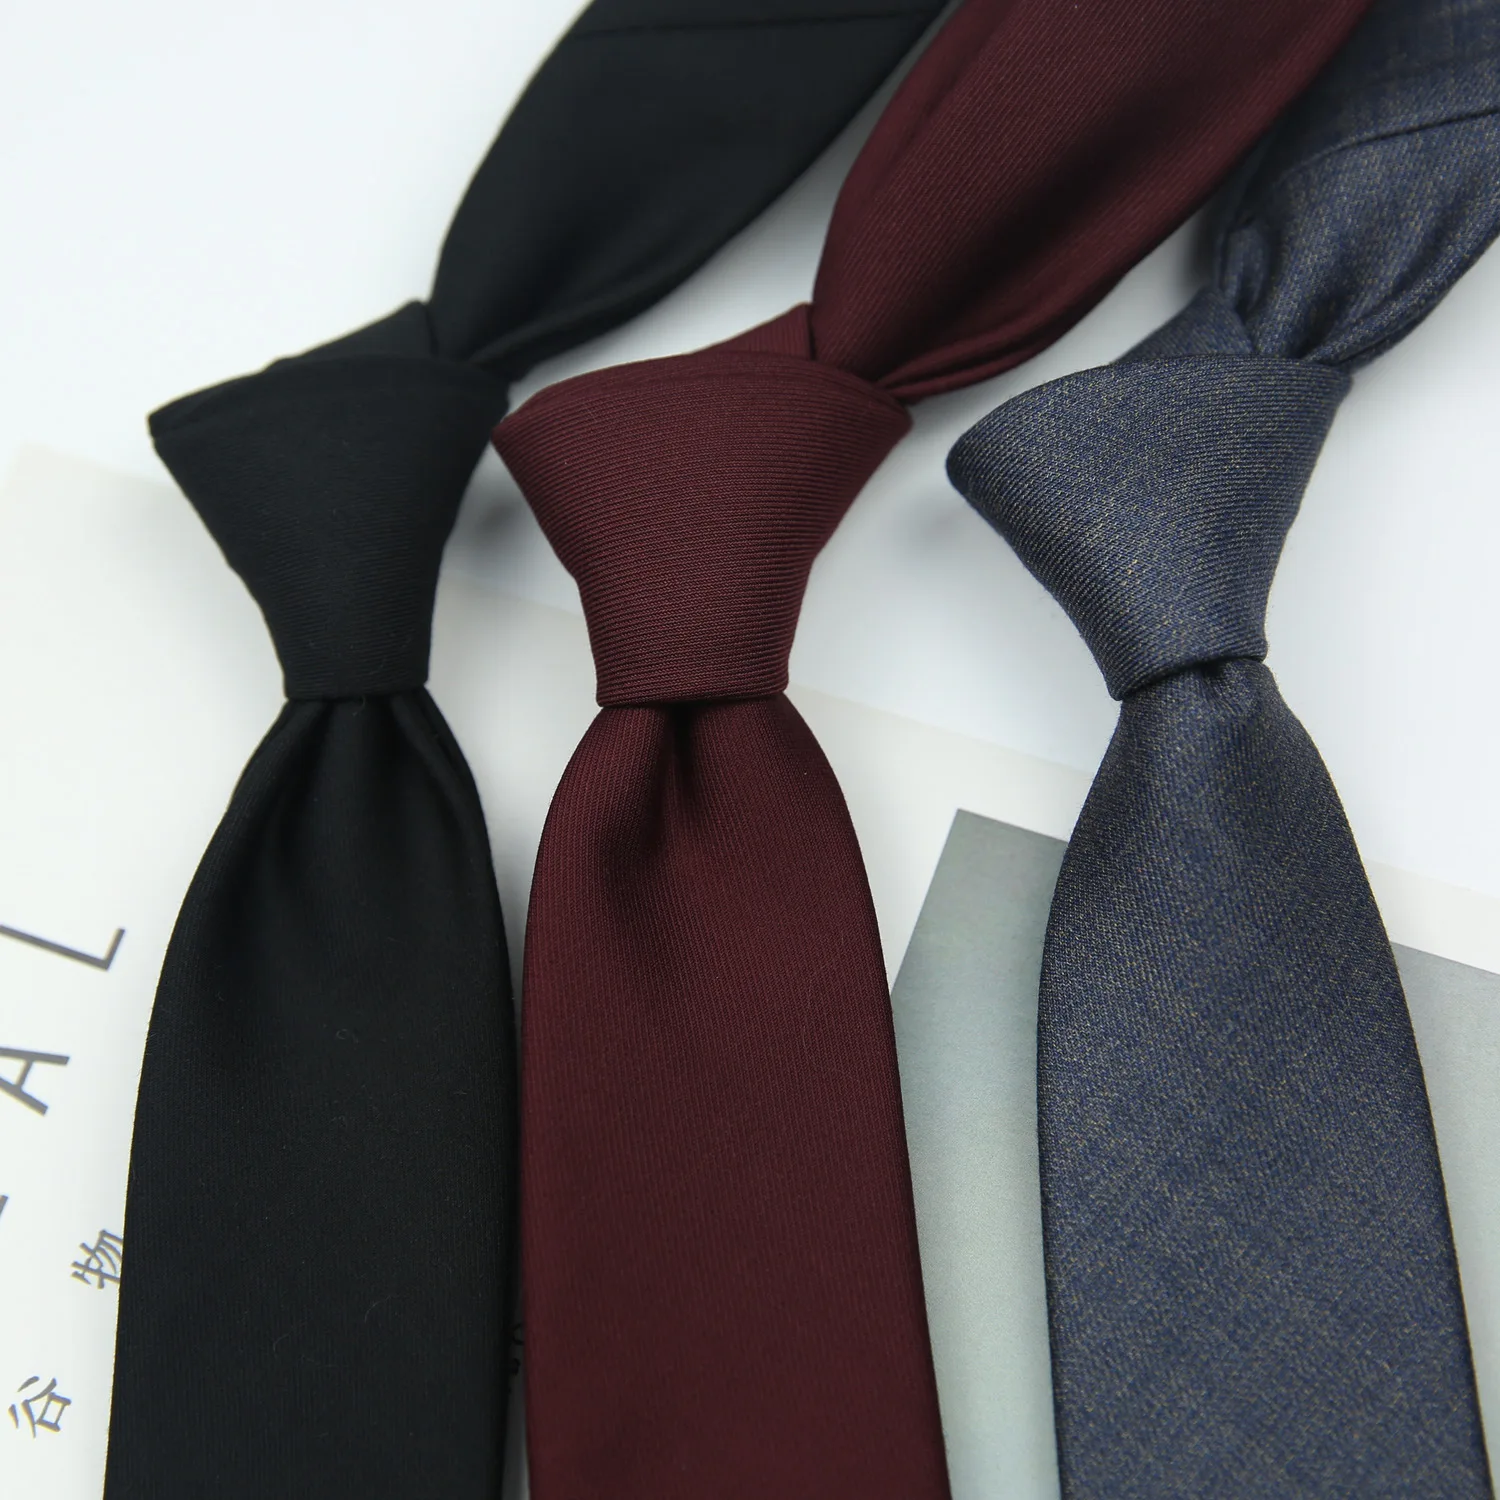 7 см Академический Британский стиль, Хаки, Винно-красный, черный, однотонный полосатый нейлоновый галстук жаккардового переплетения для мужчин, деловой свадебный галстук 2